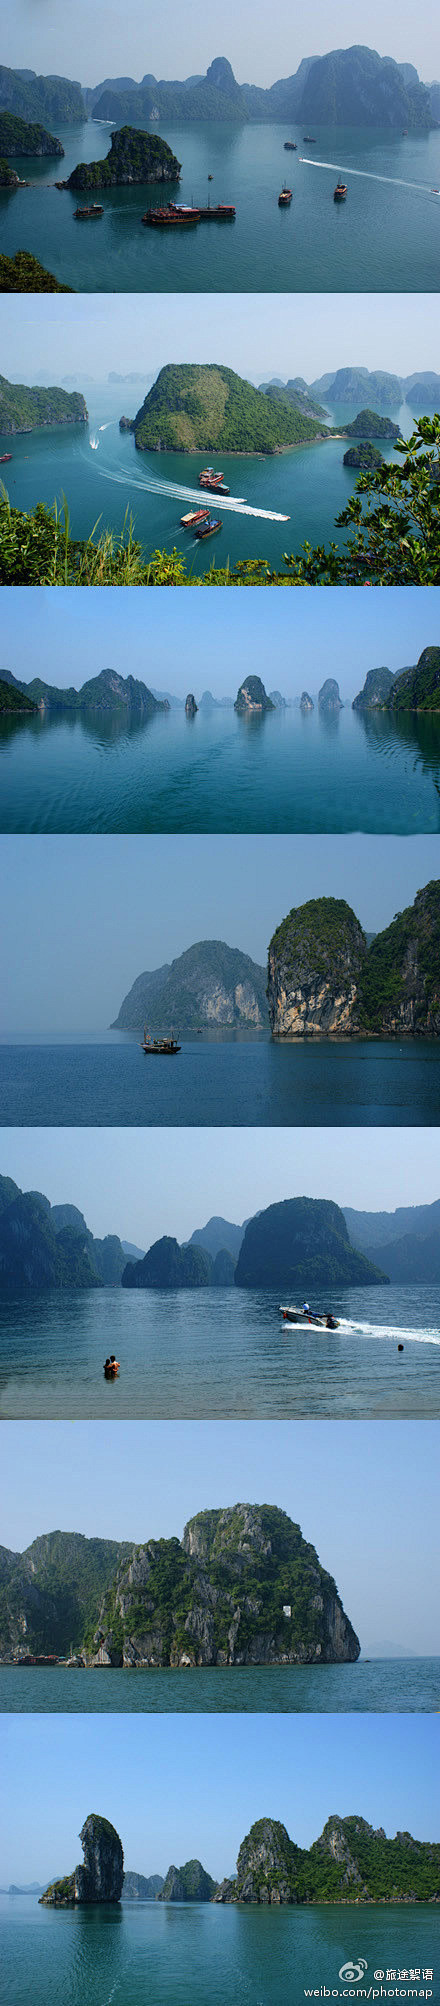 越南媲美桂林山水的风景——下龙湾 #花瓣...